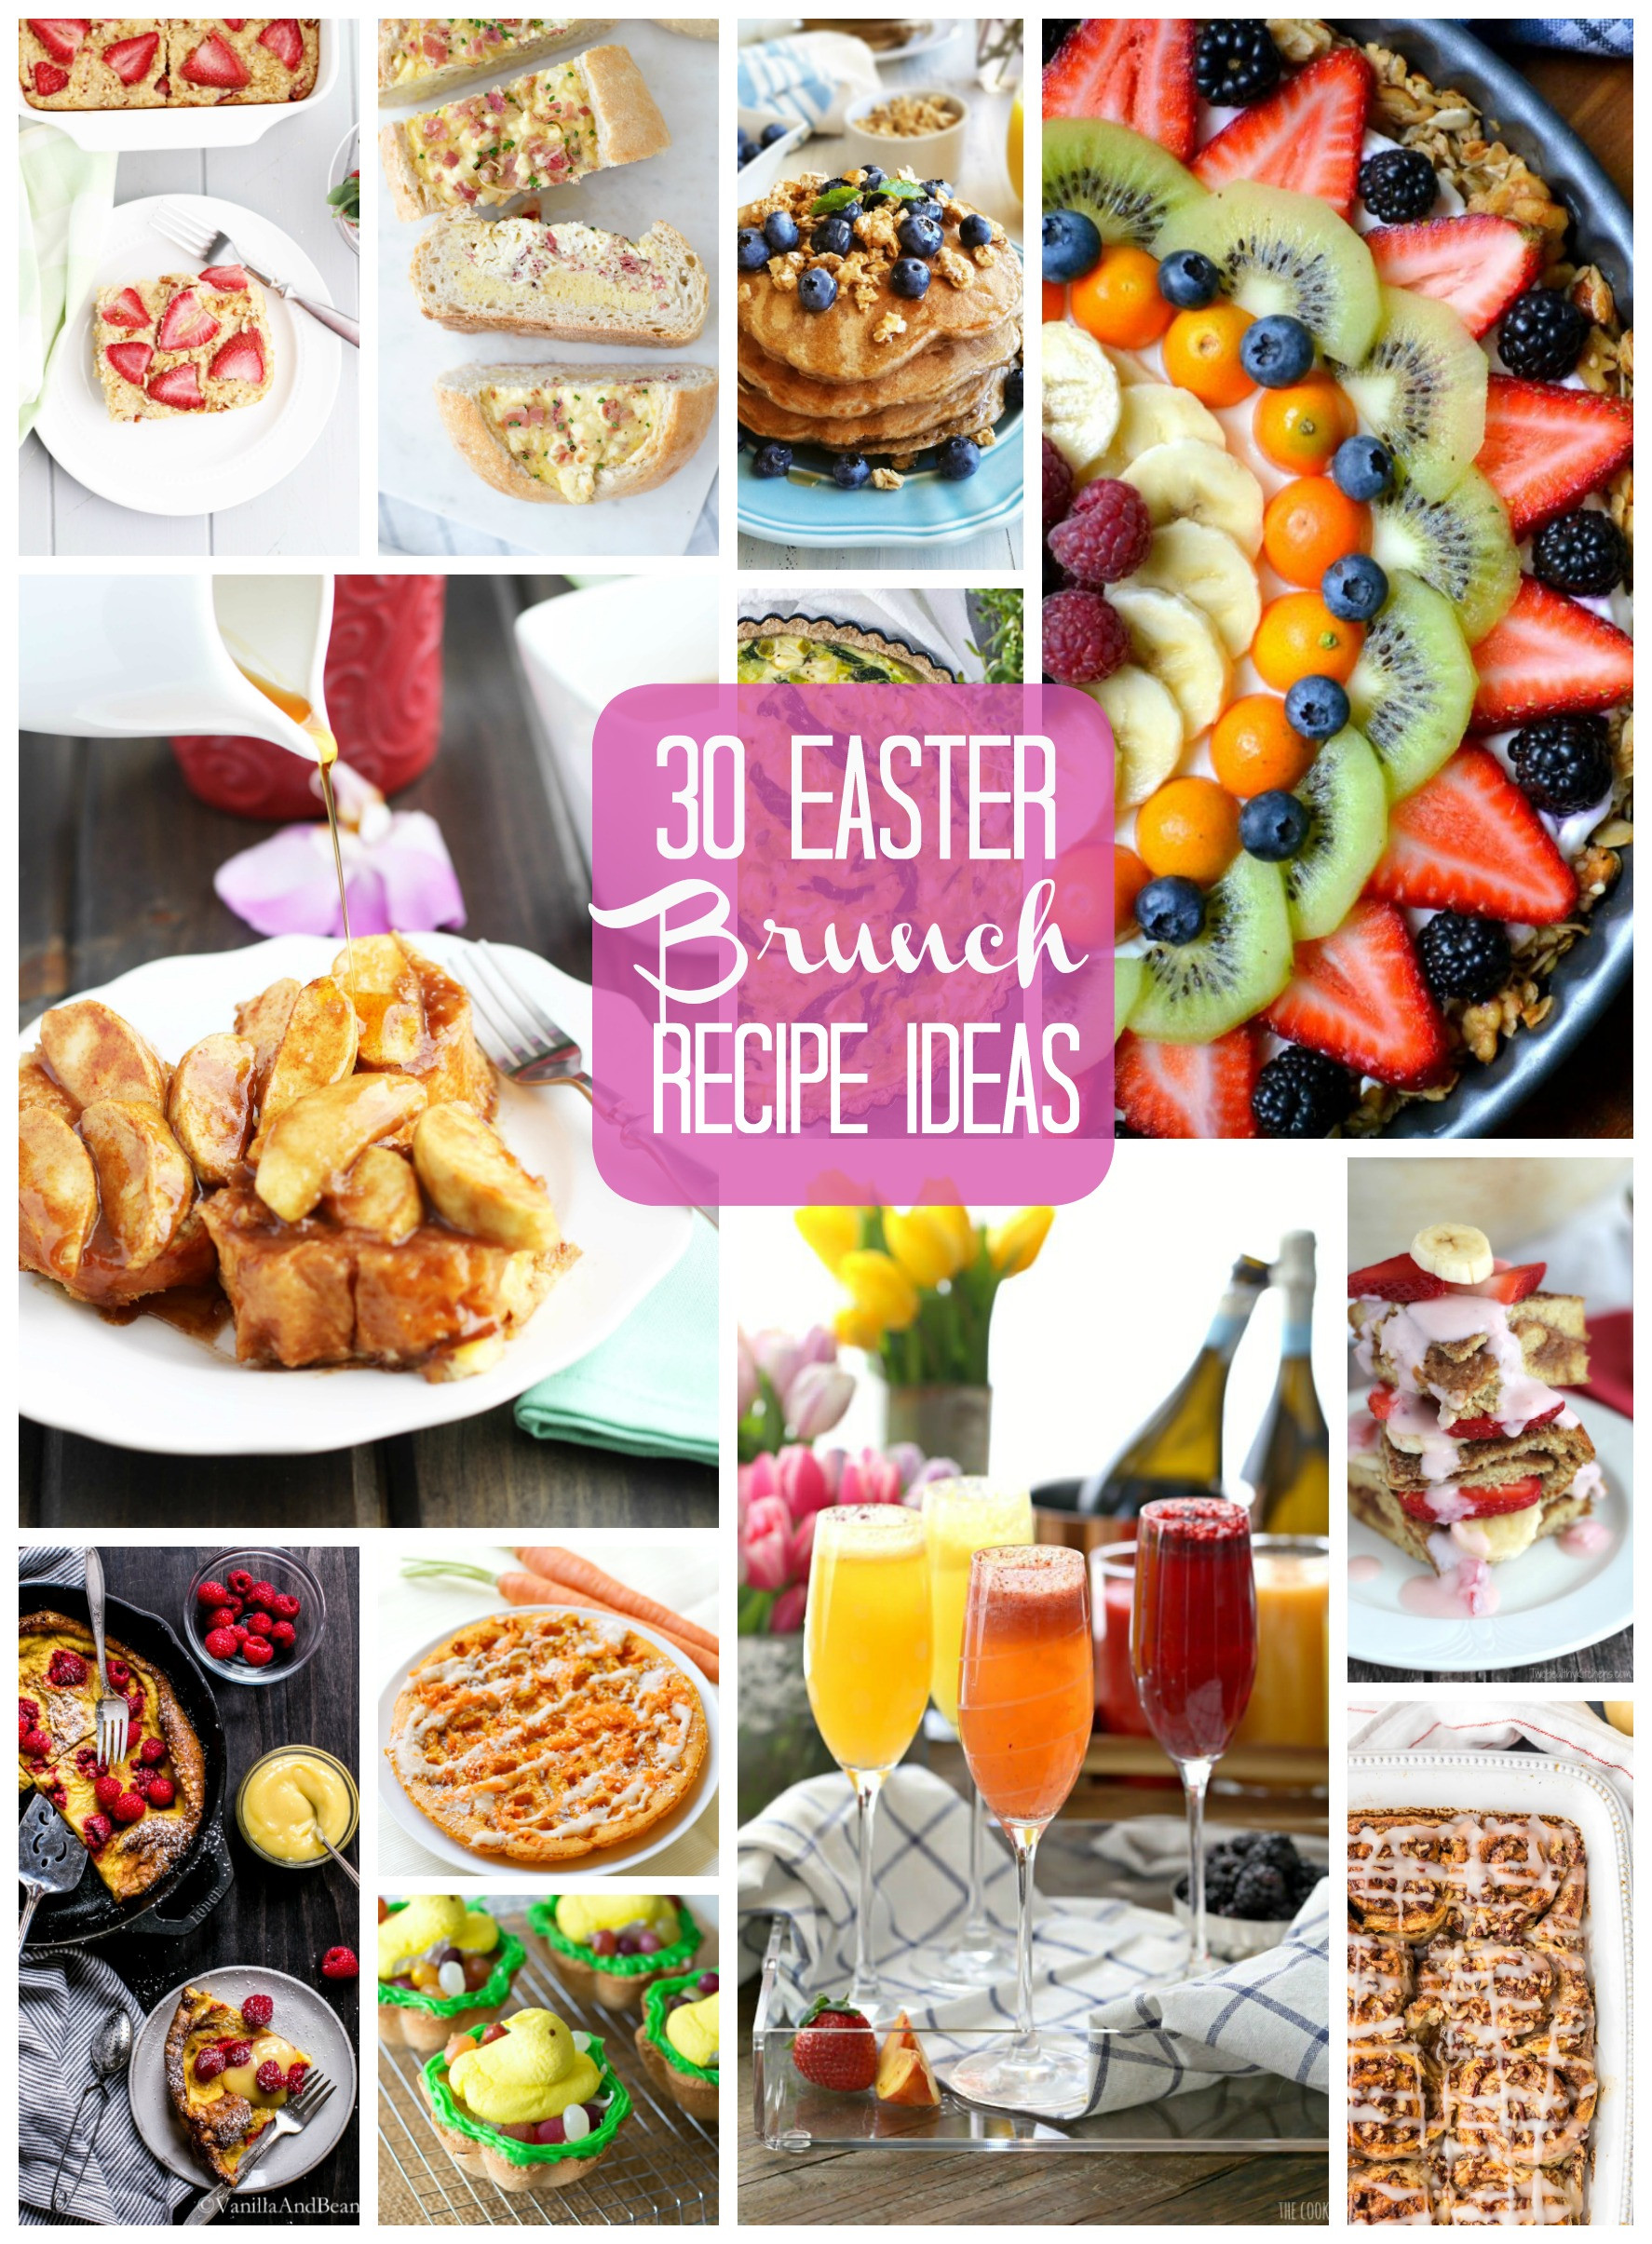 Food For Easter Brunch
 30 Easter Brunch Recipe Ideas